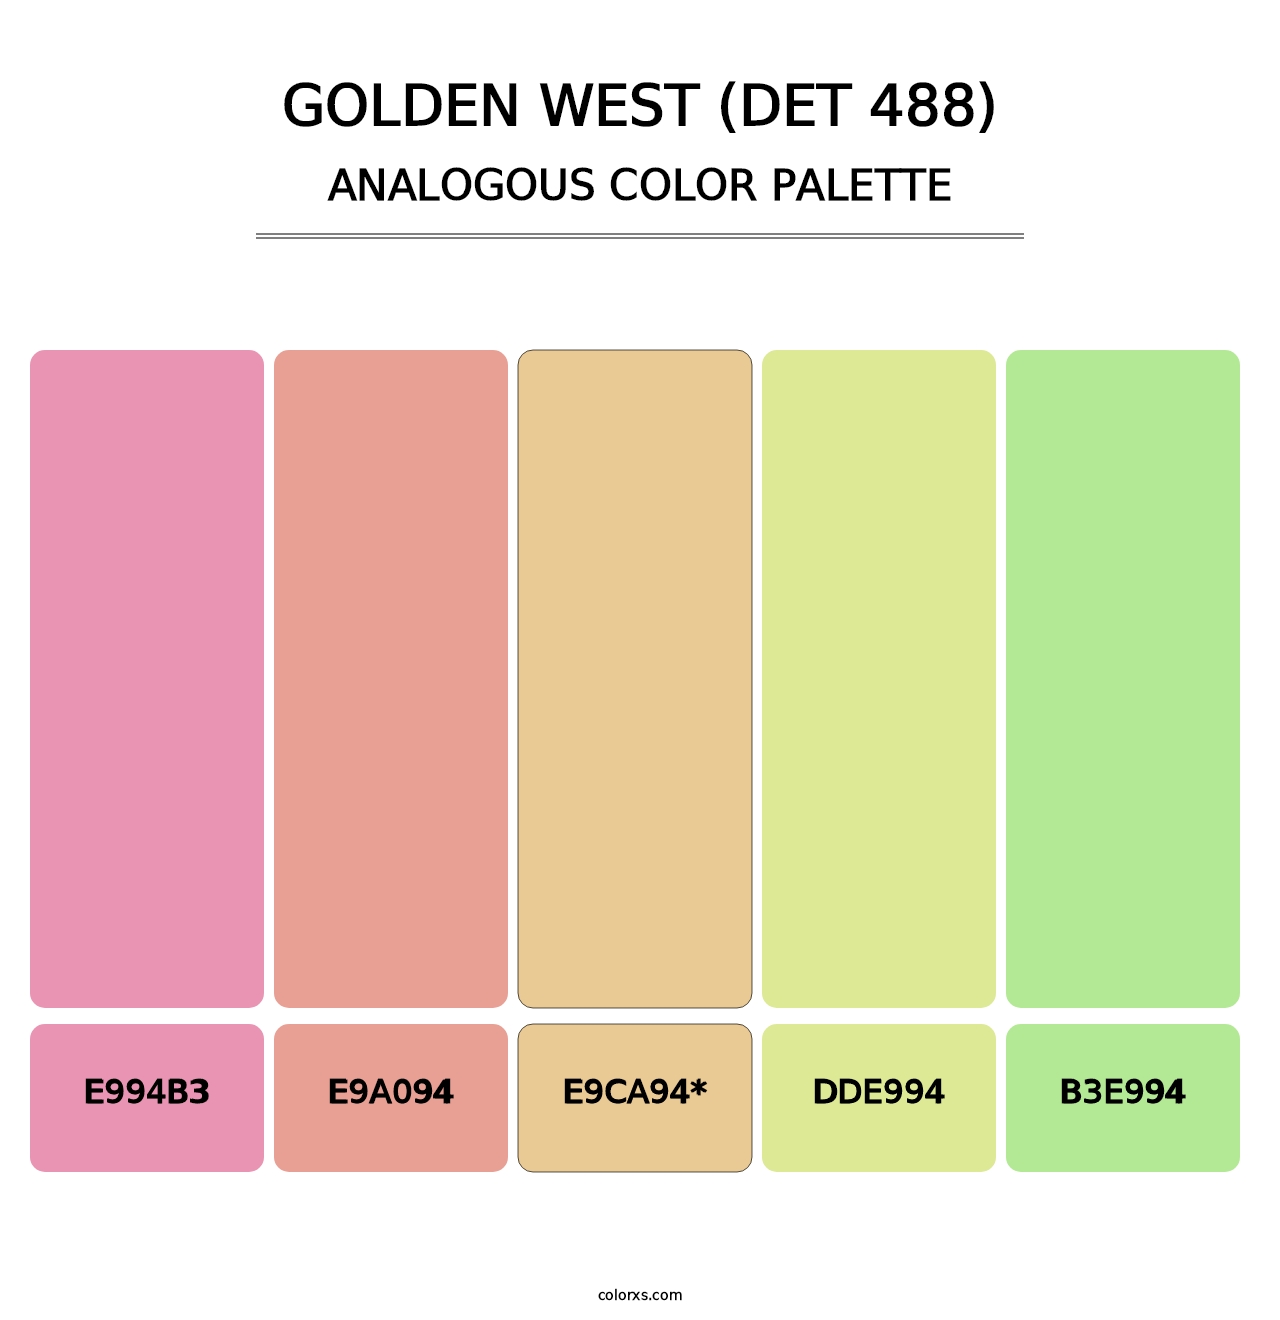 Golden West (DET 488) - Analogous Color Palette